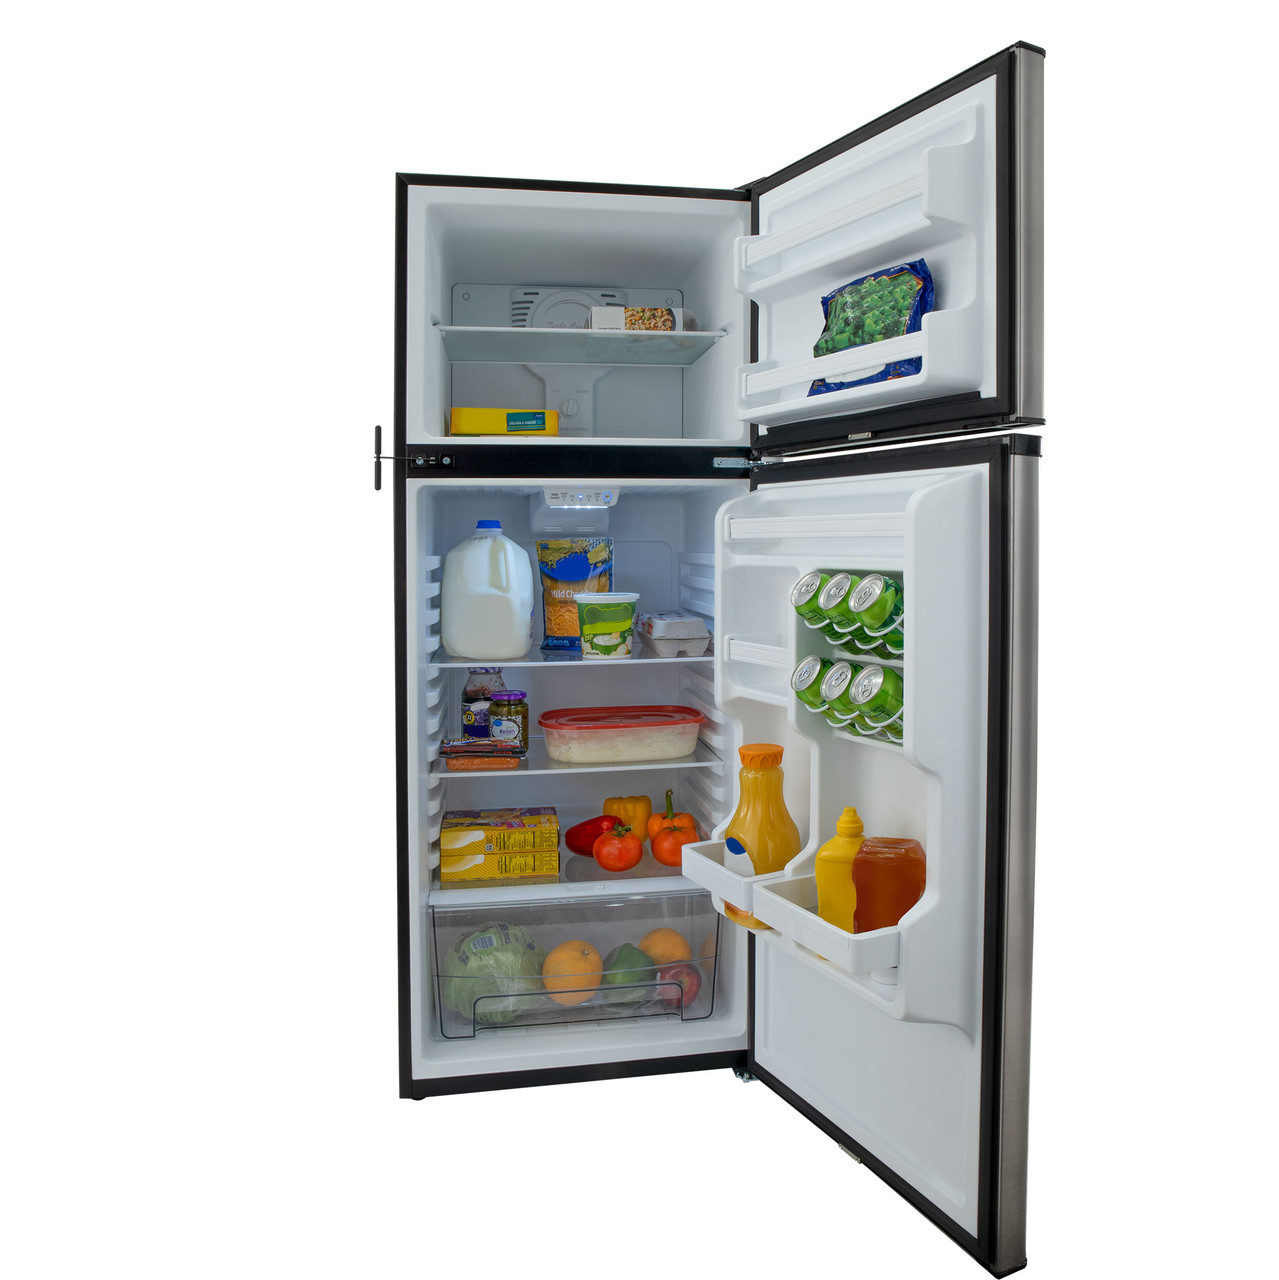 12v-everchill-fridge-open-w-food-01381.jpg